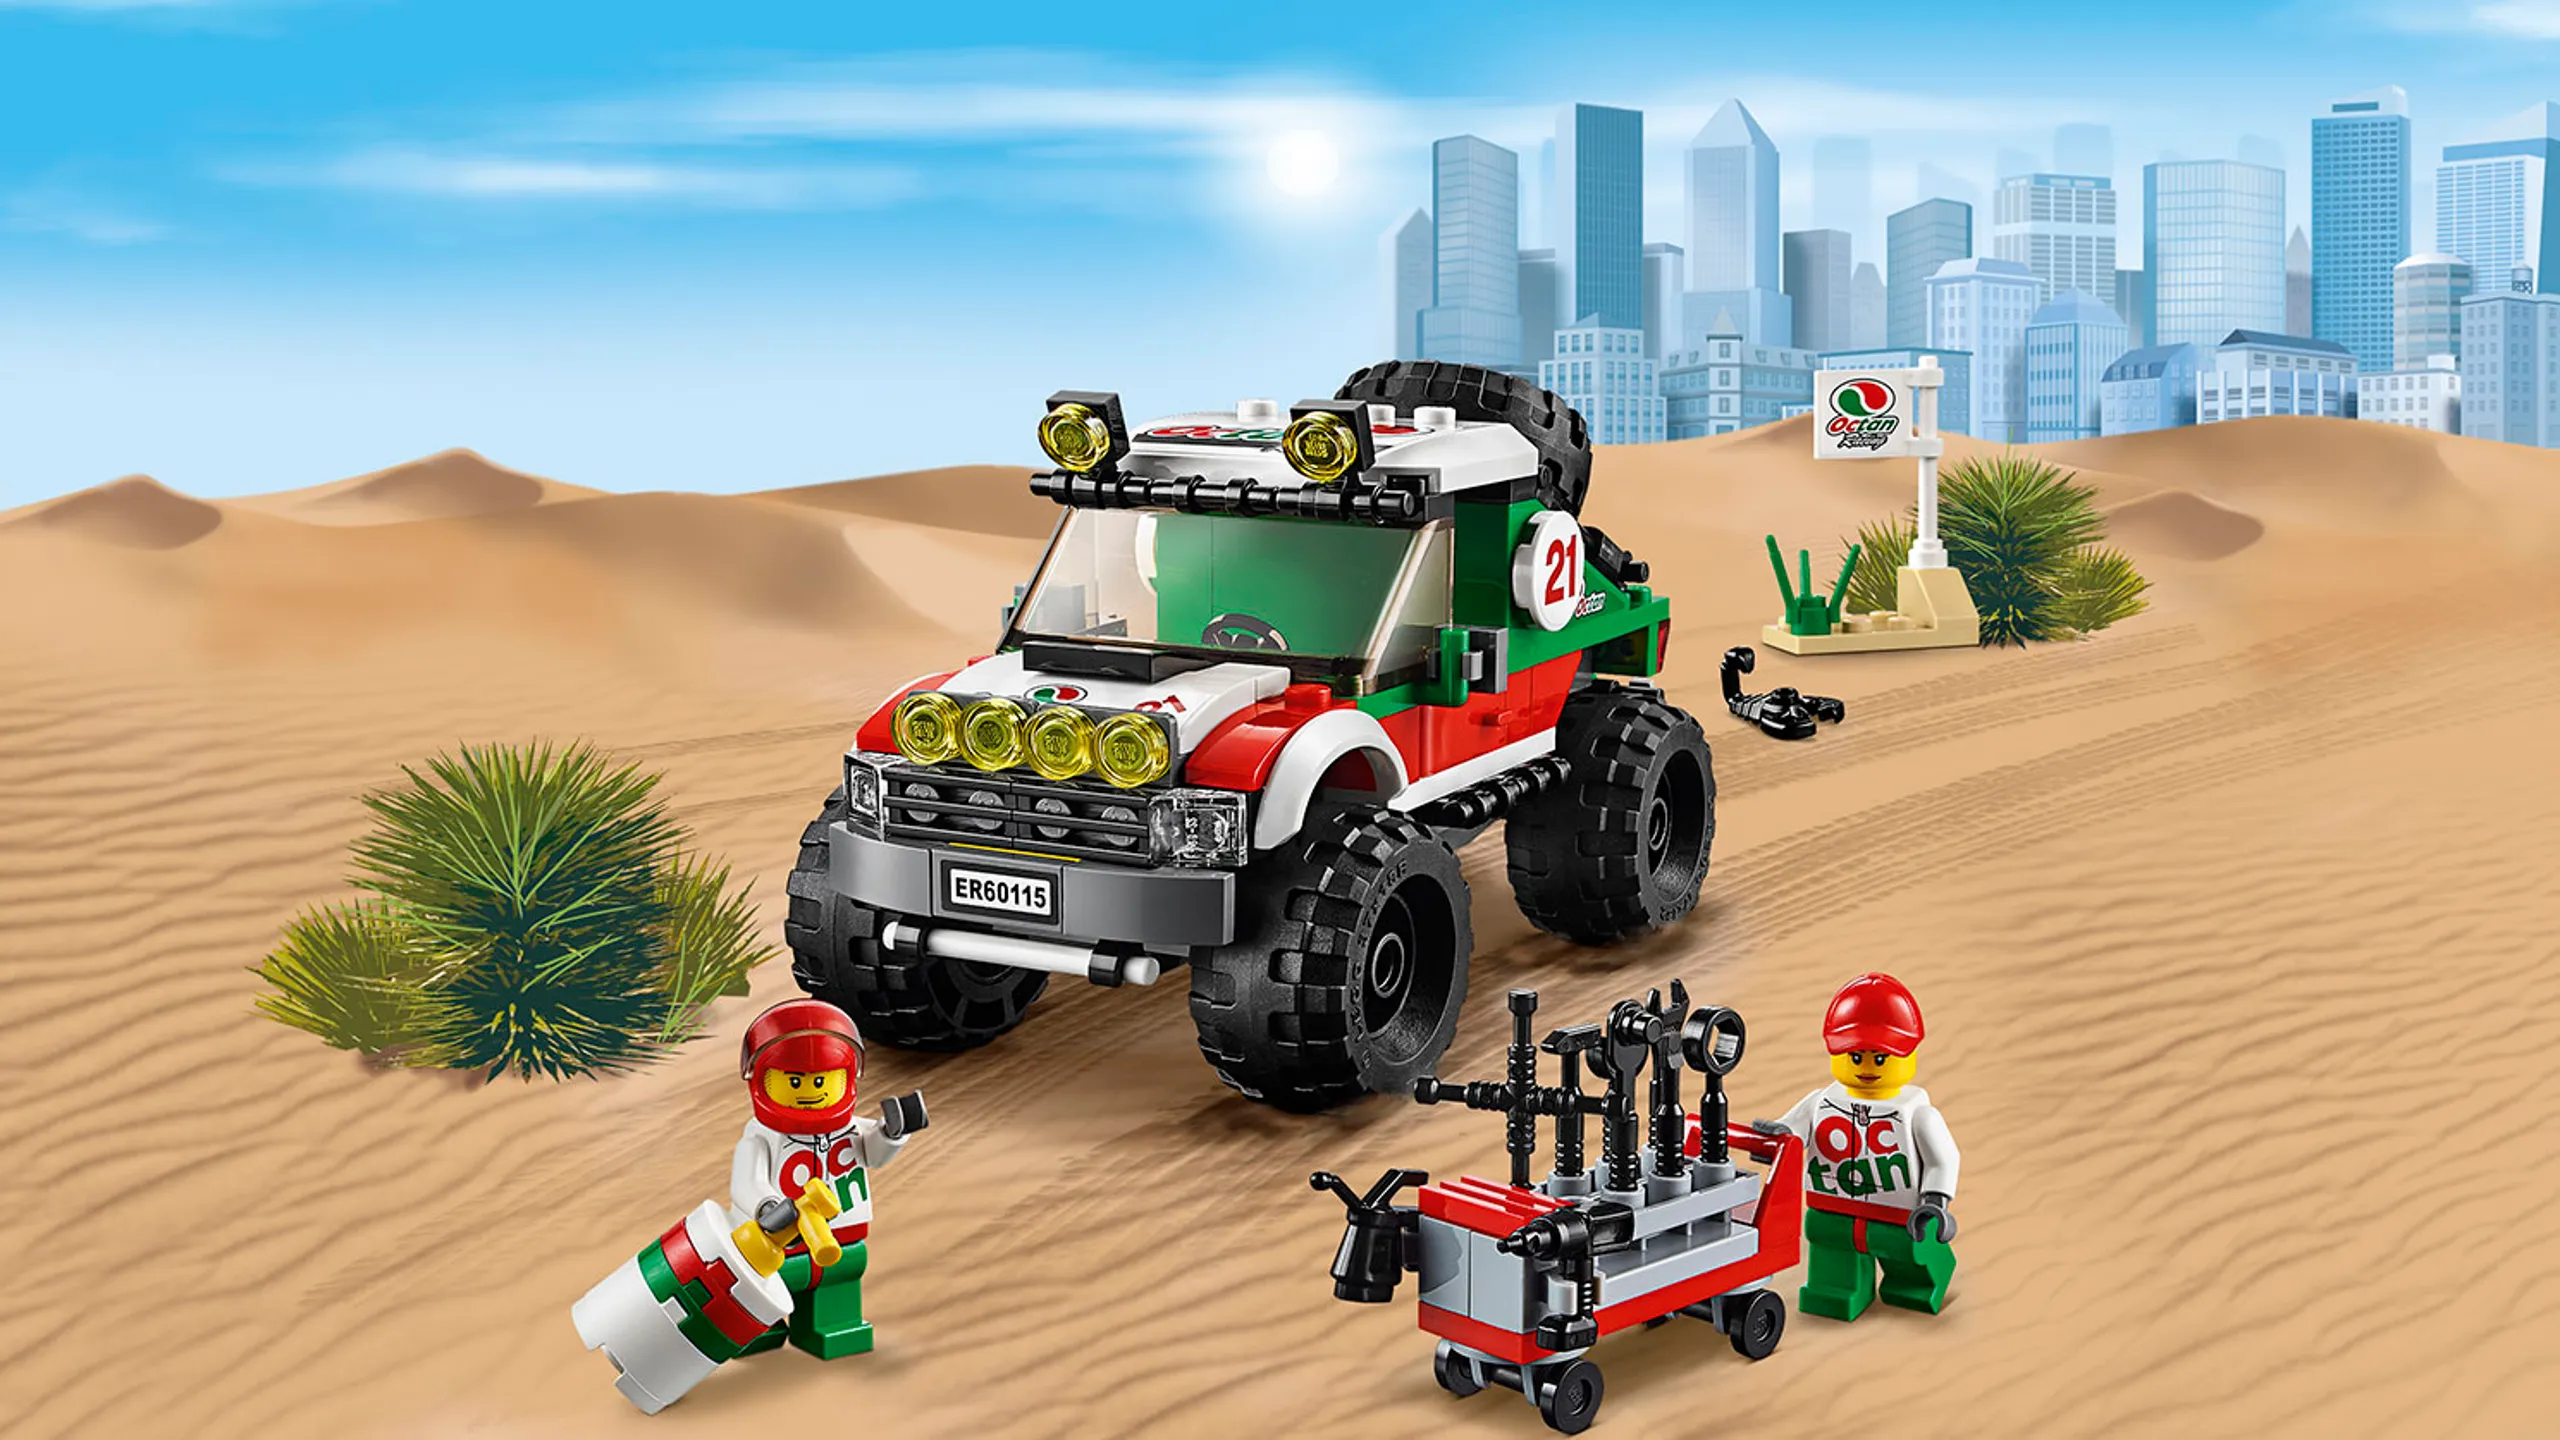 LEGO City Skvělá vozidla Terénní vůz s minifigurkami řidiče a mechanika – Terénní vozidlo 4x4 60115